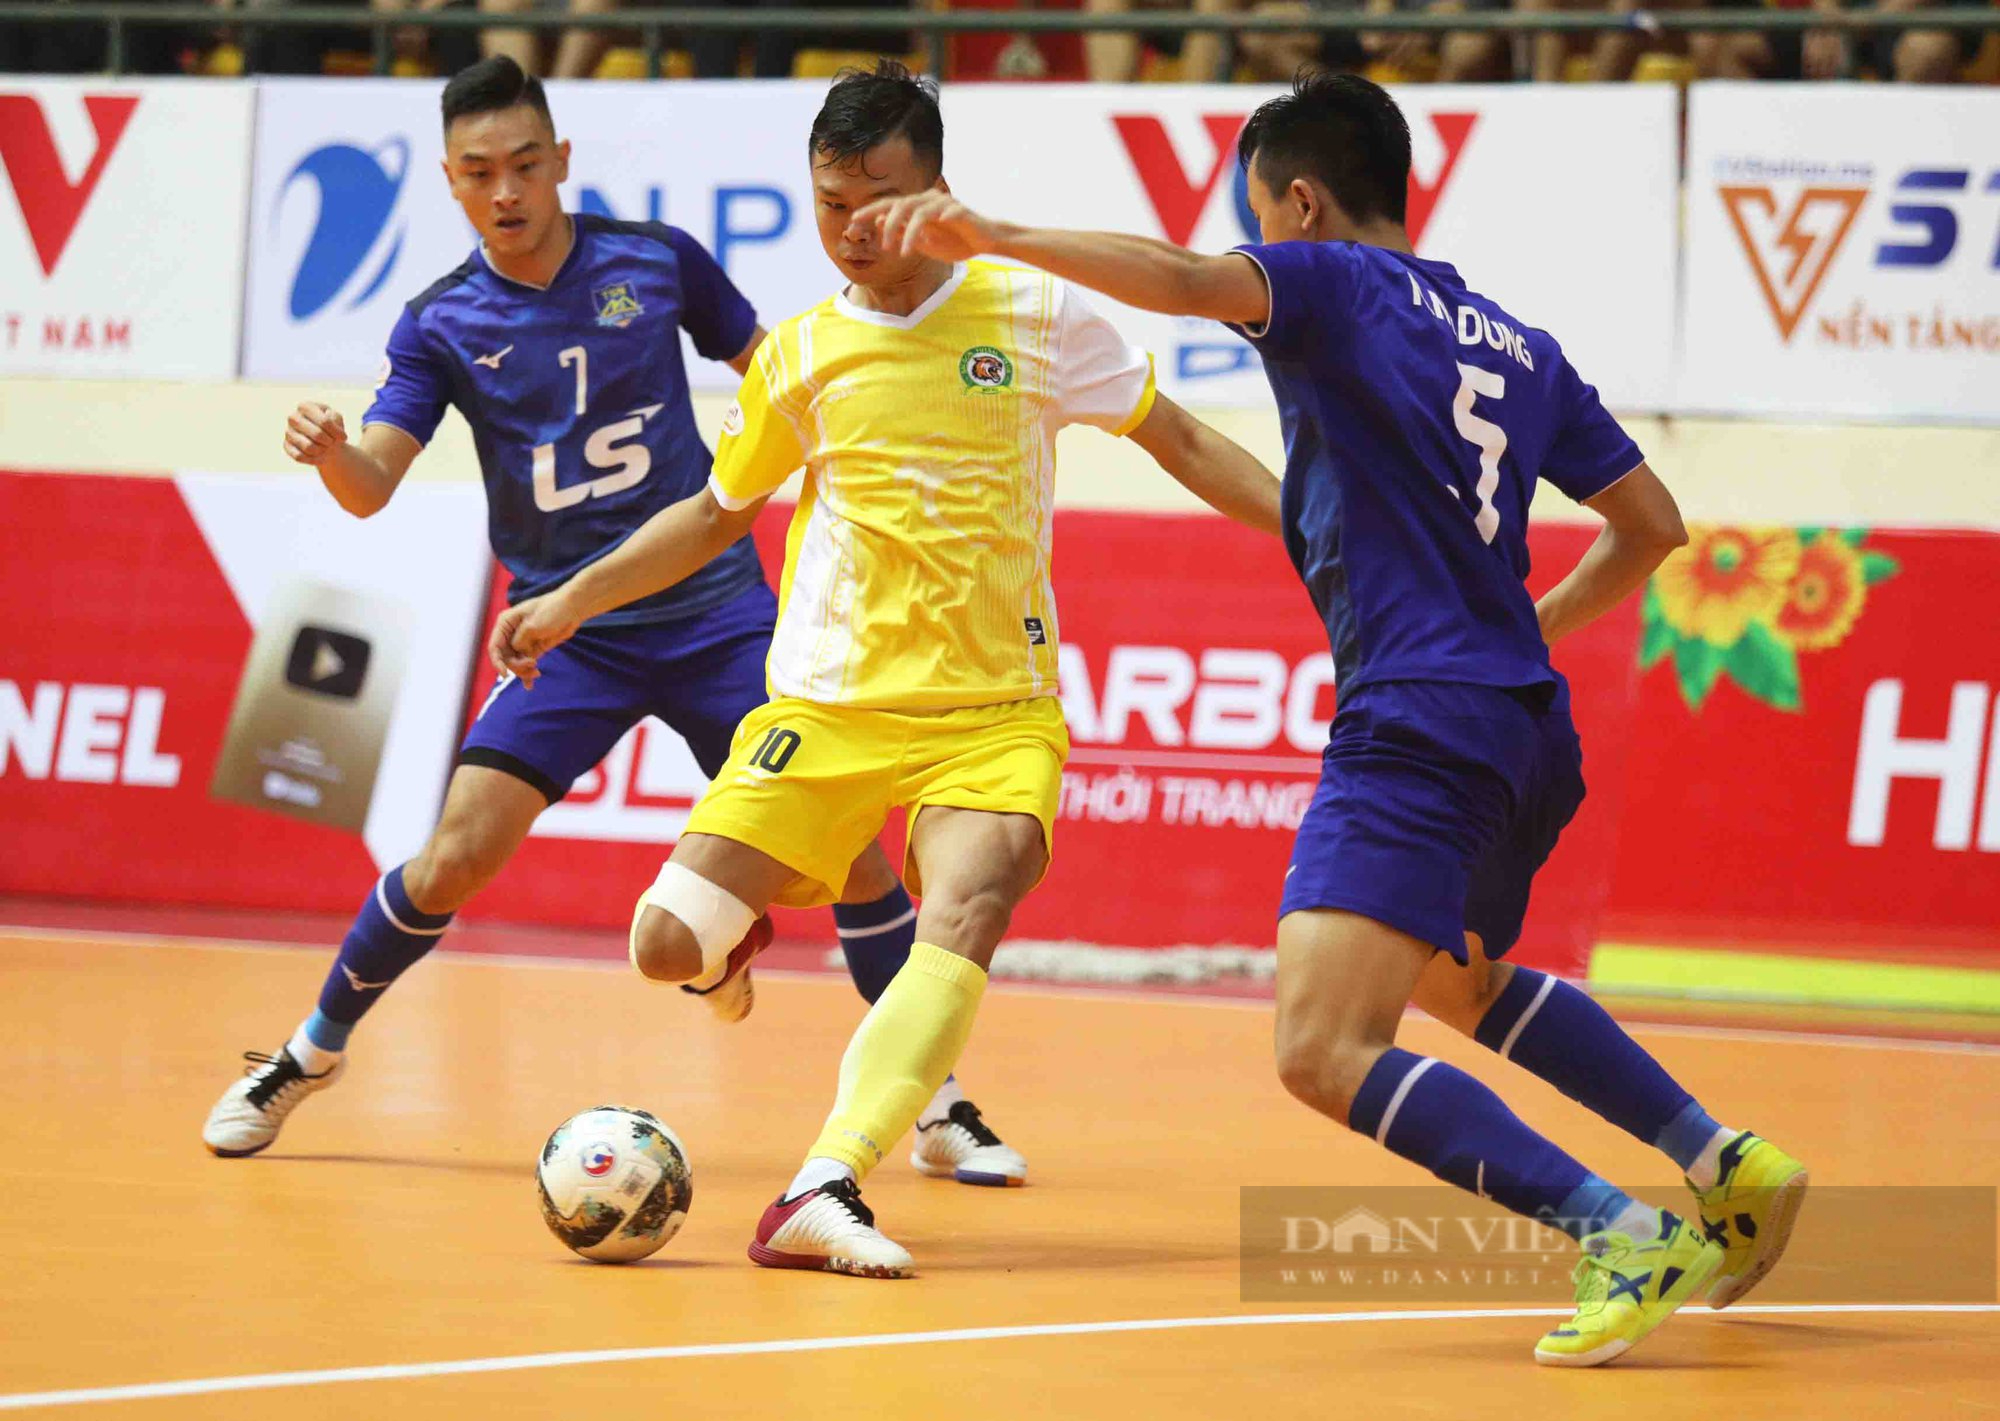 Thắng Sài Gòn FC, Thái Sơn Nam níu kéo cơ hội vô địch - Ảnh 1.